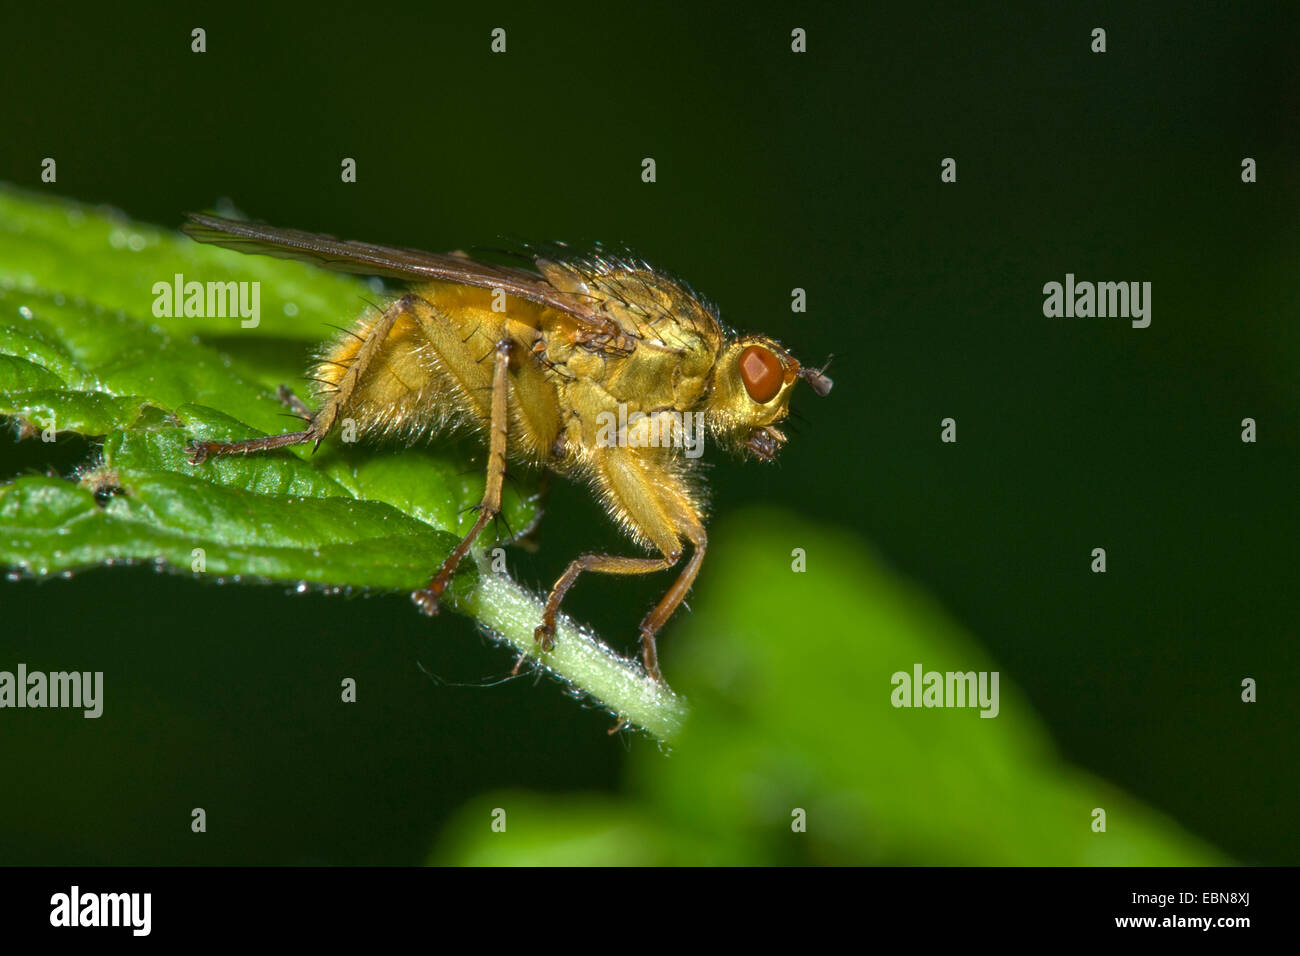 La bouse jaune fly (Scathophaga stercoraria), assis sur une feuille, Allemagne Banque D'Images